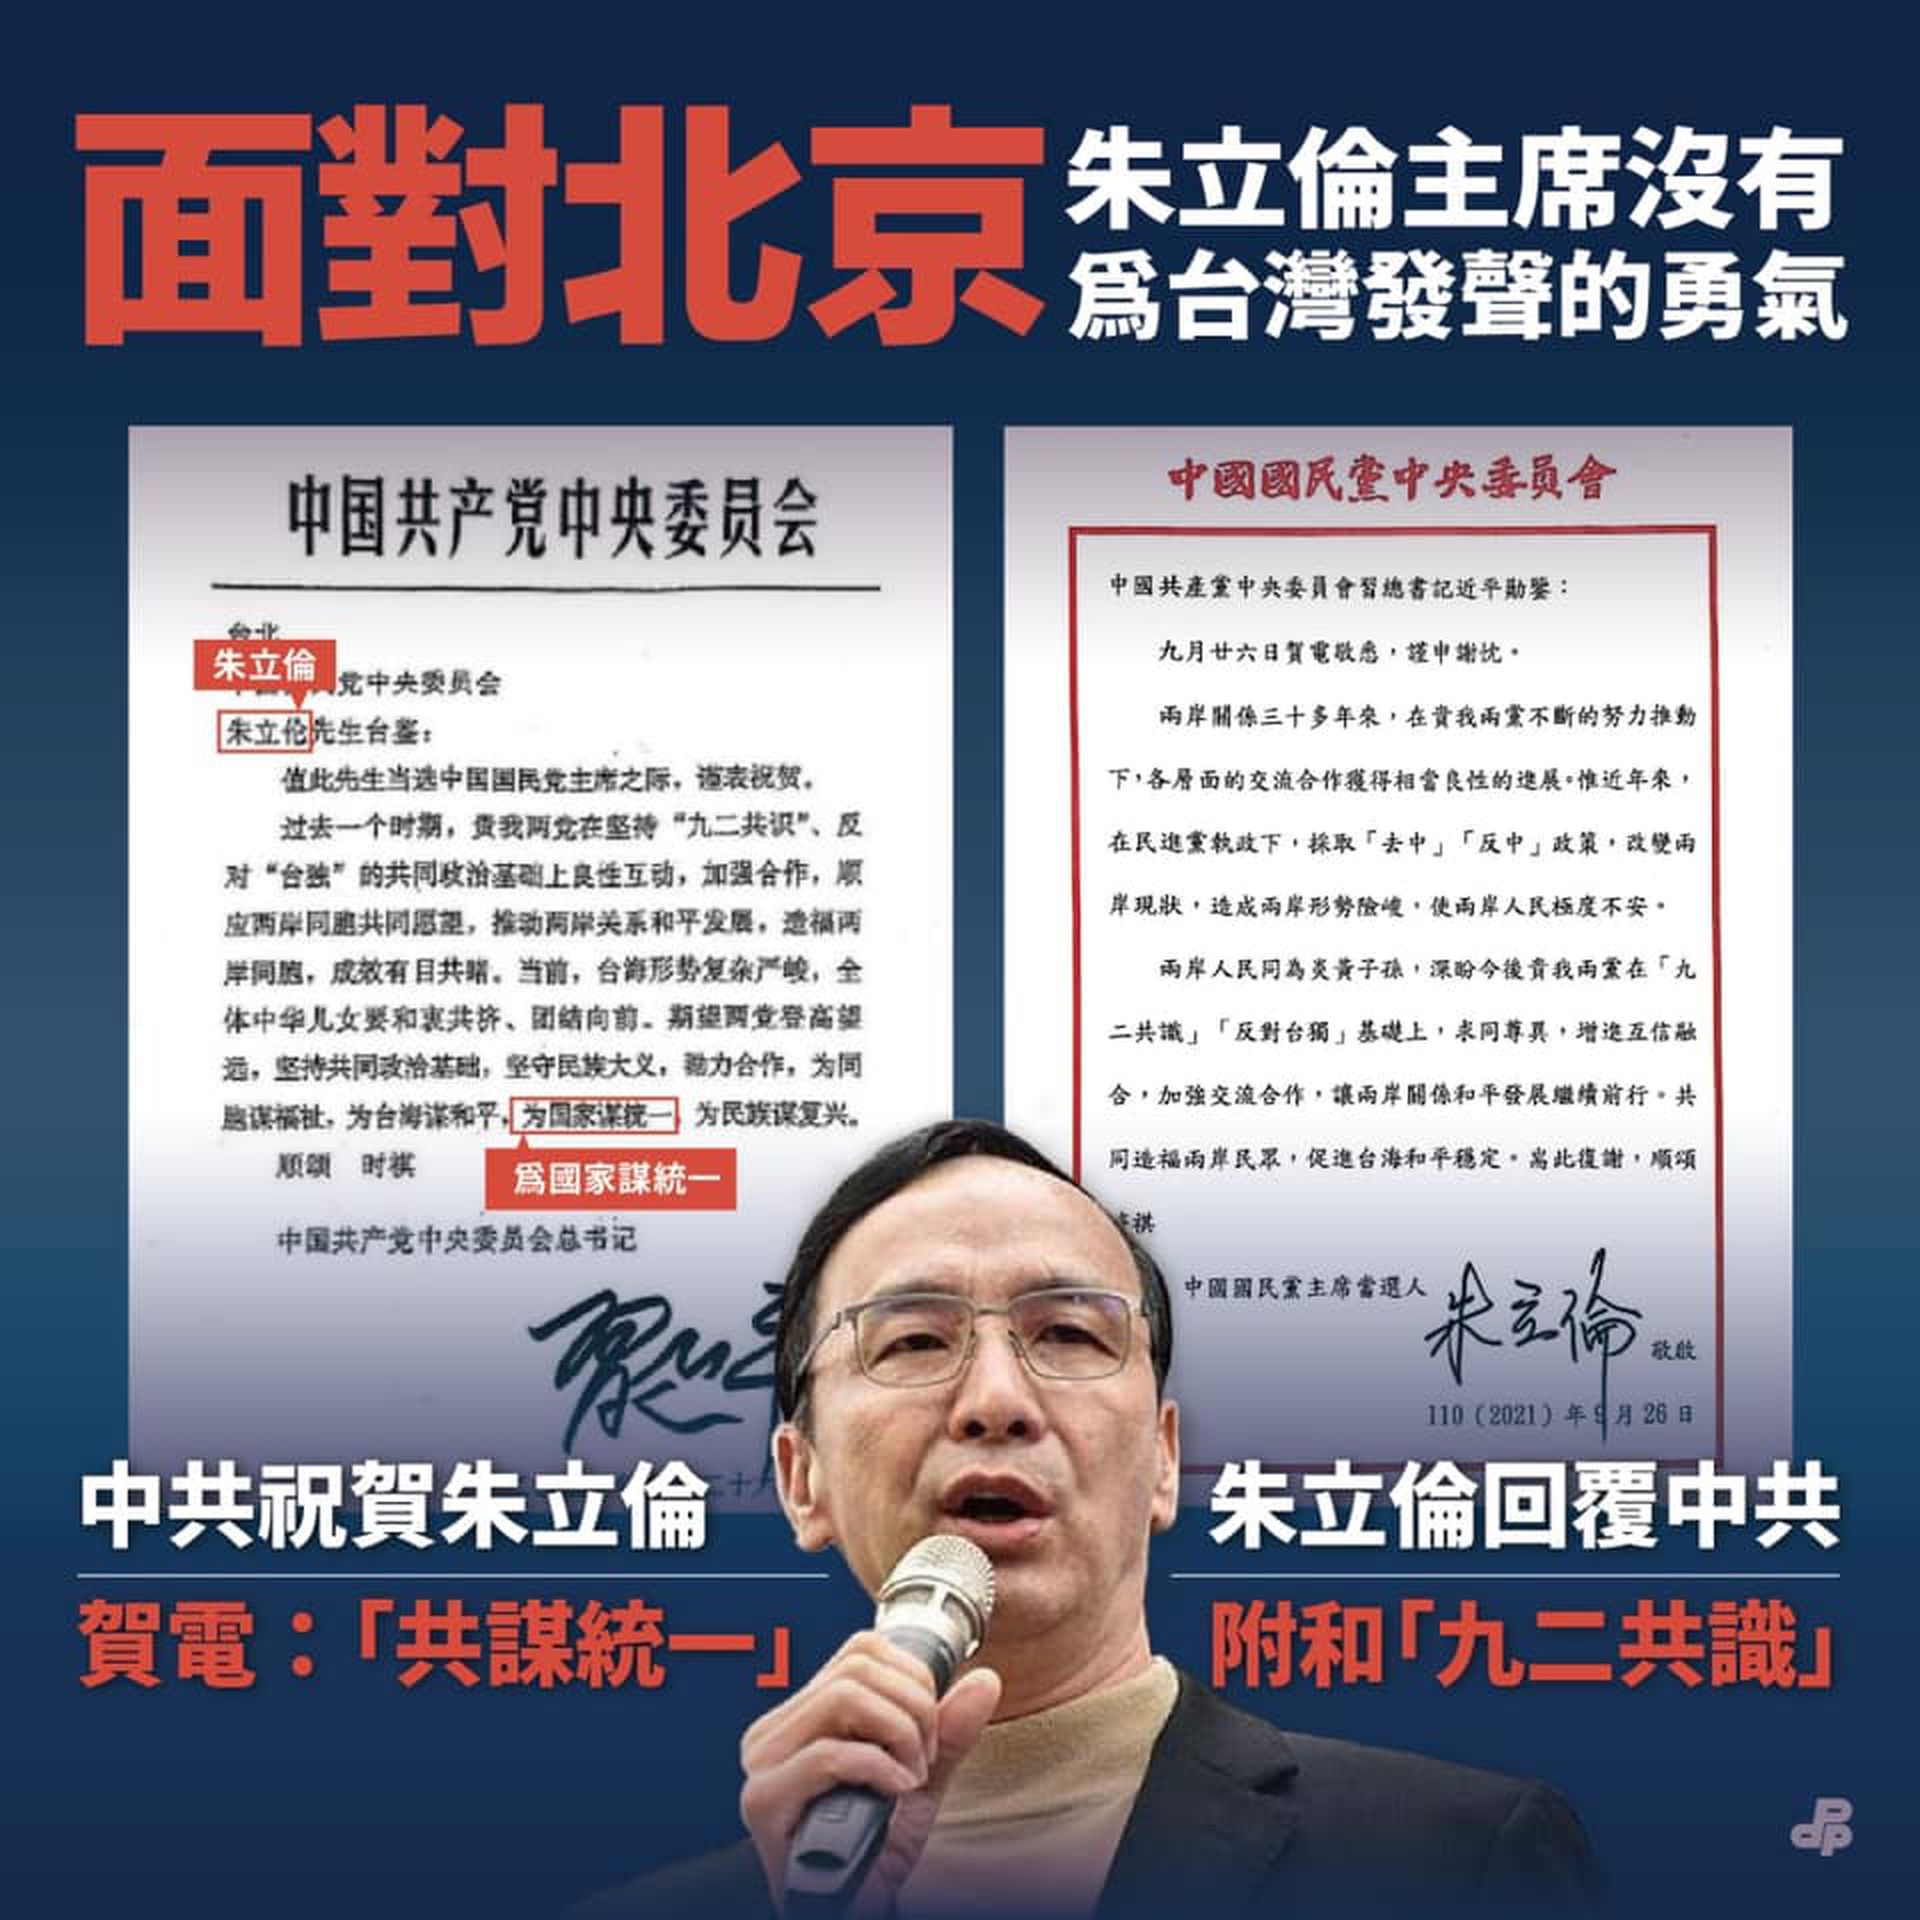 9月26日，面对习近平和朱立伦往返电文，民进党批评朱立伦面对北京“没有为台湾发声的勇气”，还指控他的复电形同是“中共附随组织”。（Facebook@民主进步党）